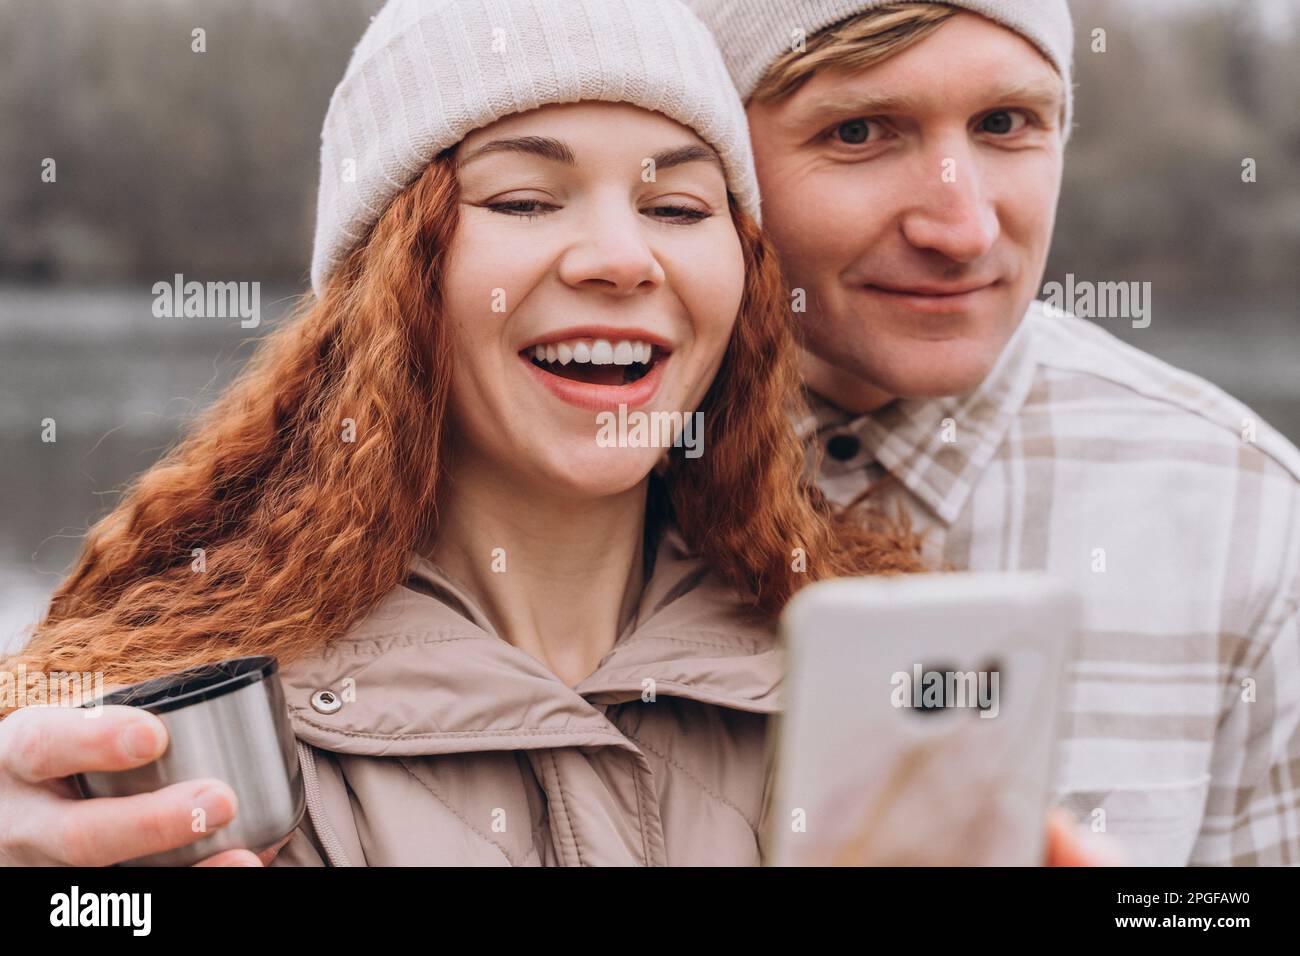 30-35 Paar, das beim Gehen Selfie oder Videoanruf macht Stockfoto